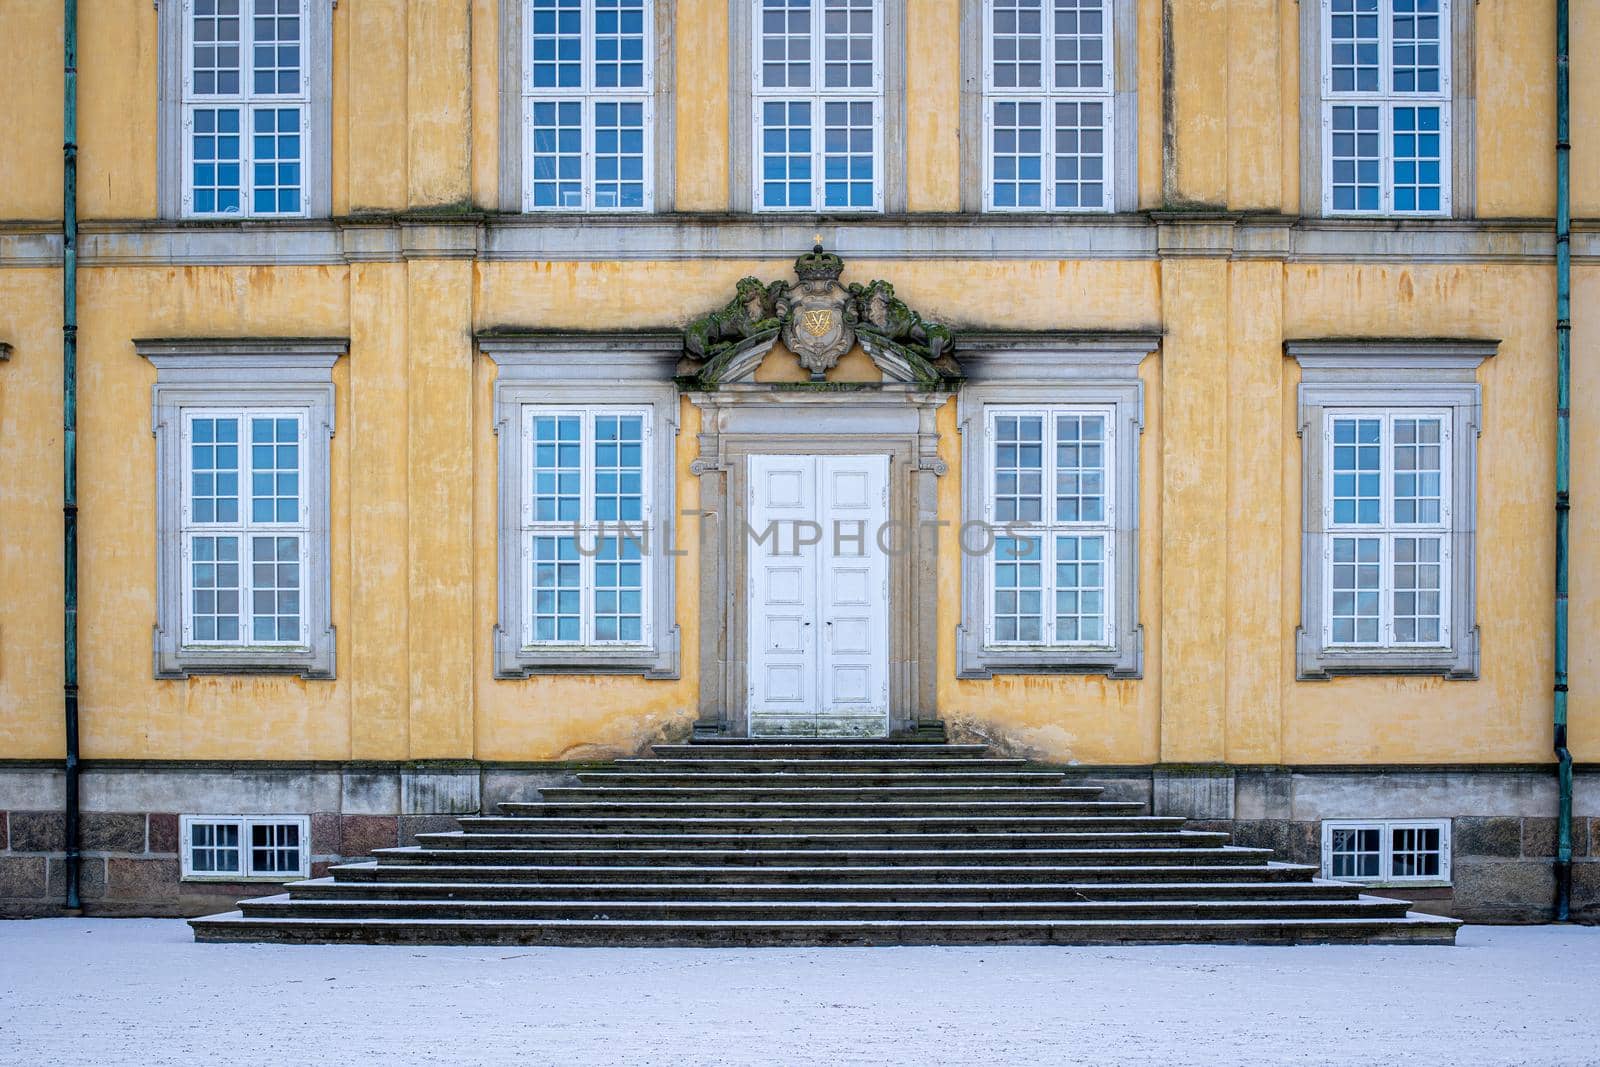 Frederiksberg Castle in Copenhagen, Denmark by oliverfoerstner